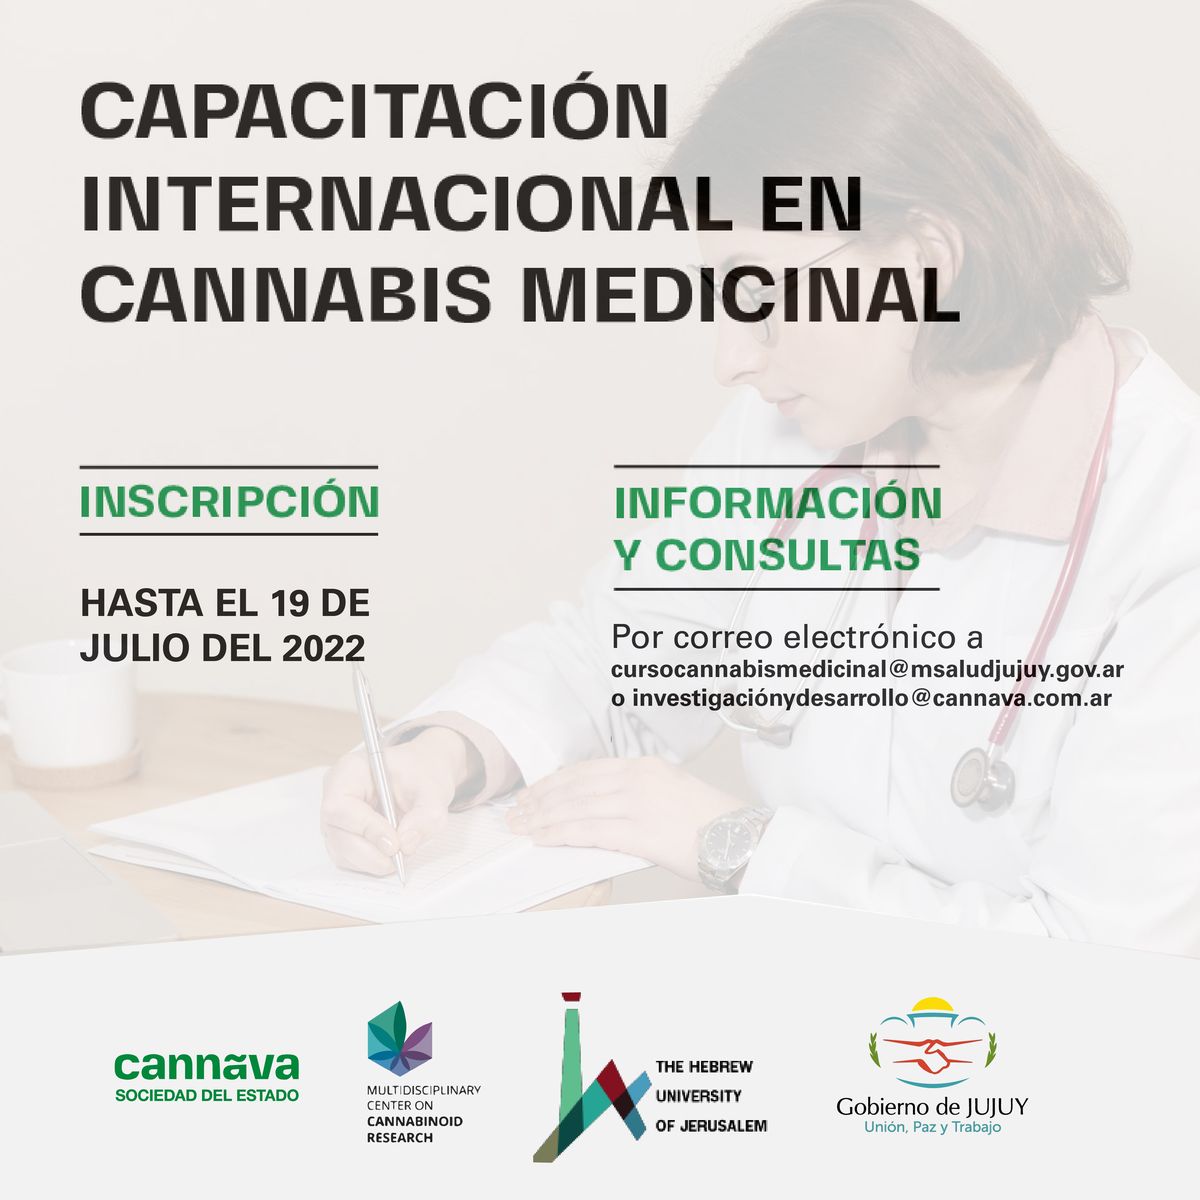 Capacitación internacional en Cannabis medicinal para profesionales de la salud